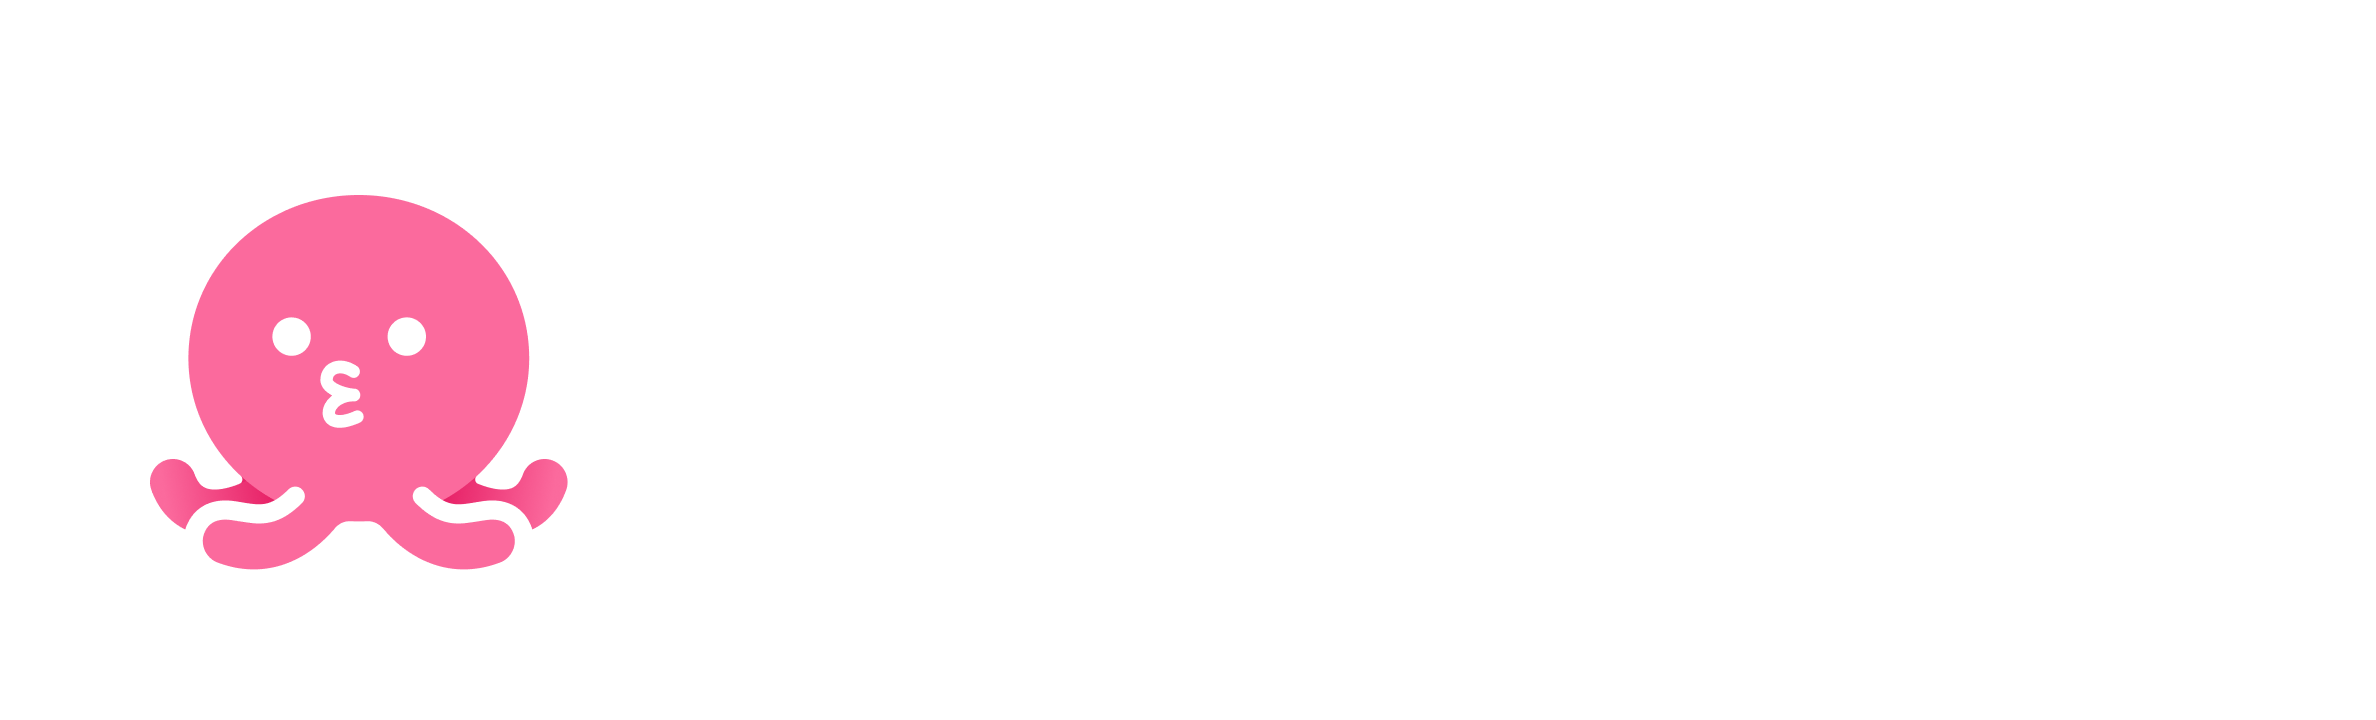 Shumitako logo